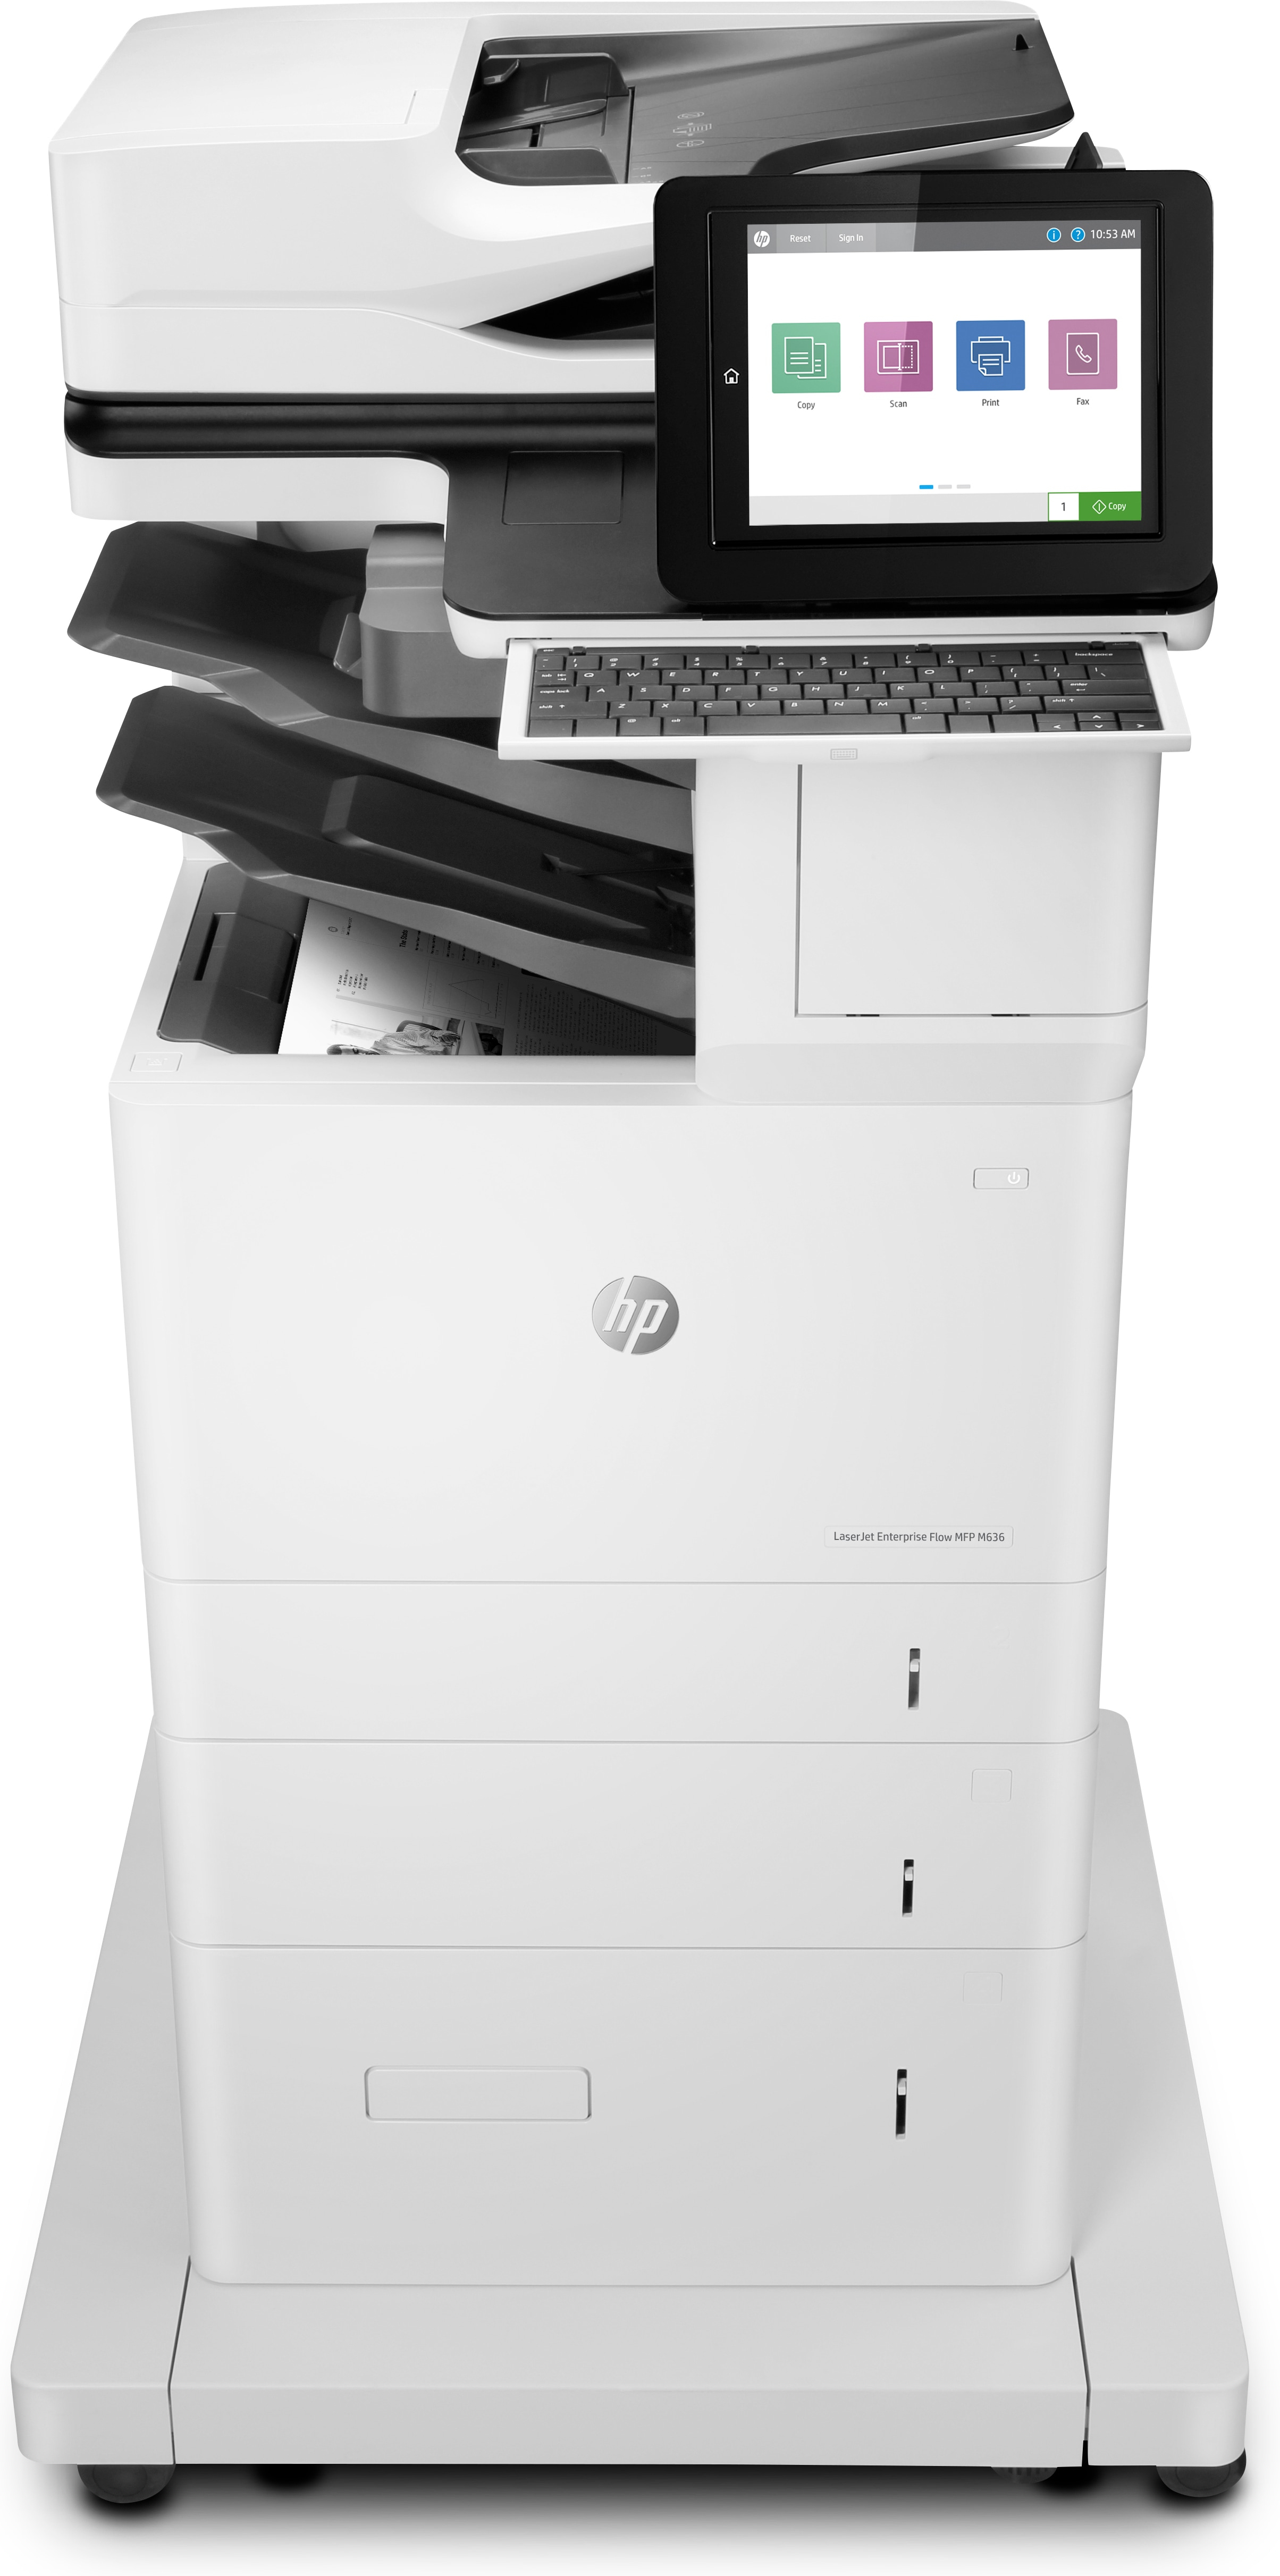 HP LaserJet Enterprise Flow MFP M636z, Skriv ut, kopiera, skanna, fax, Skanna till e-post; Dubbelsidig utskrift; ADF för 150 ark; Energieffektiv; Hög säkerhet